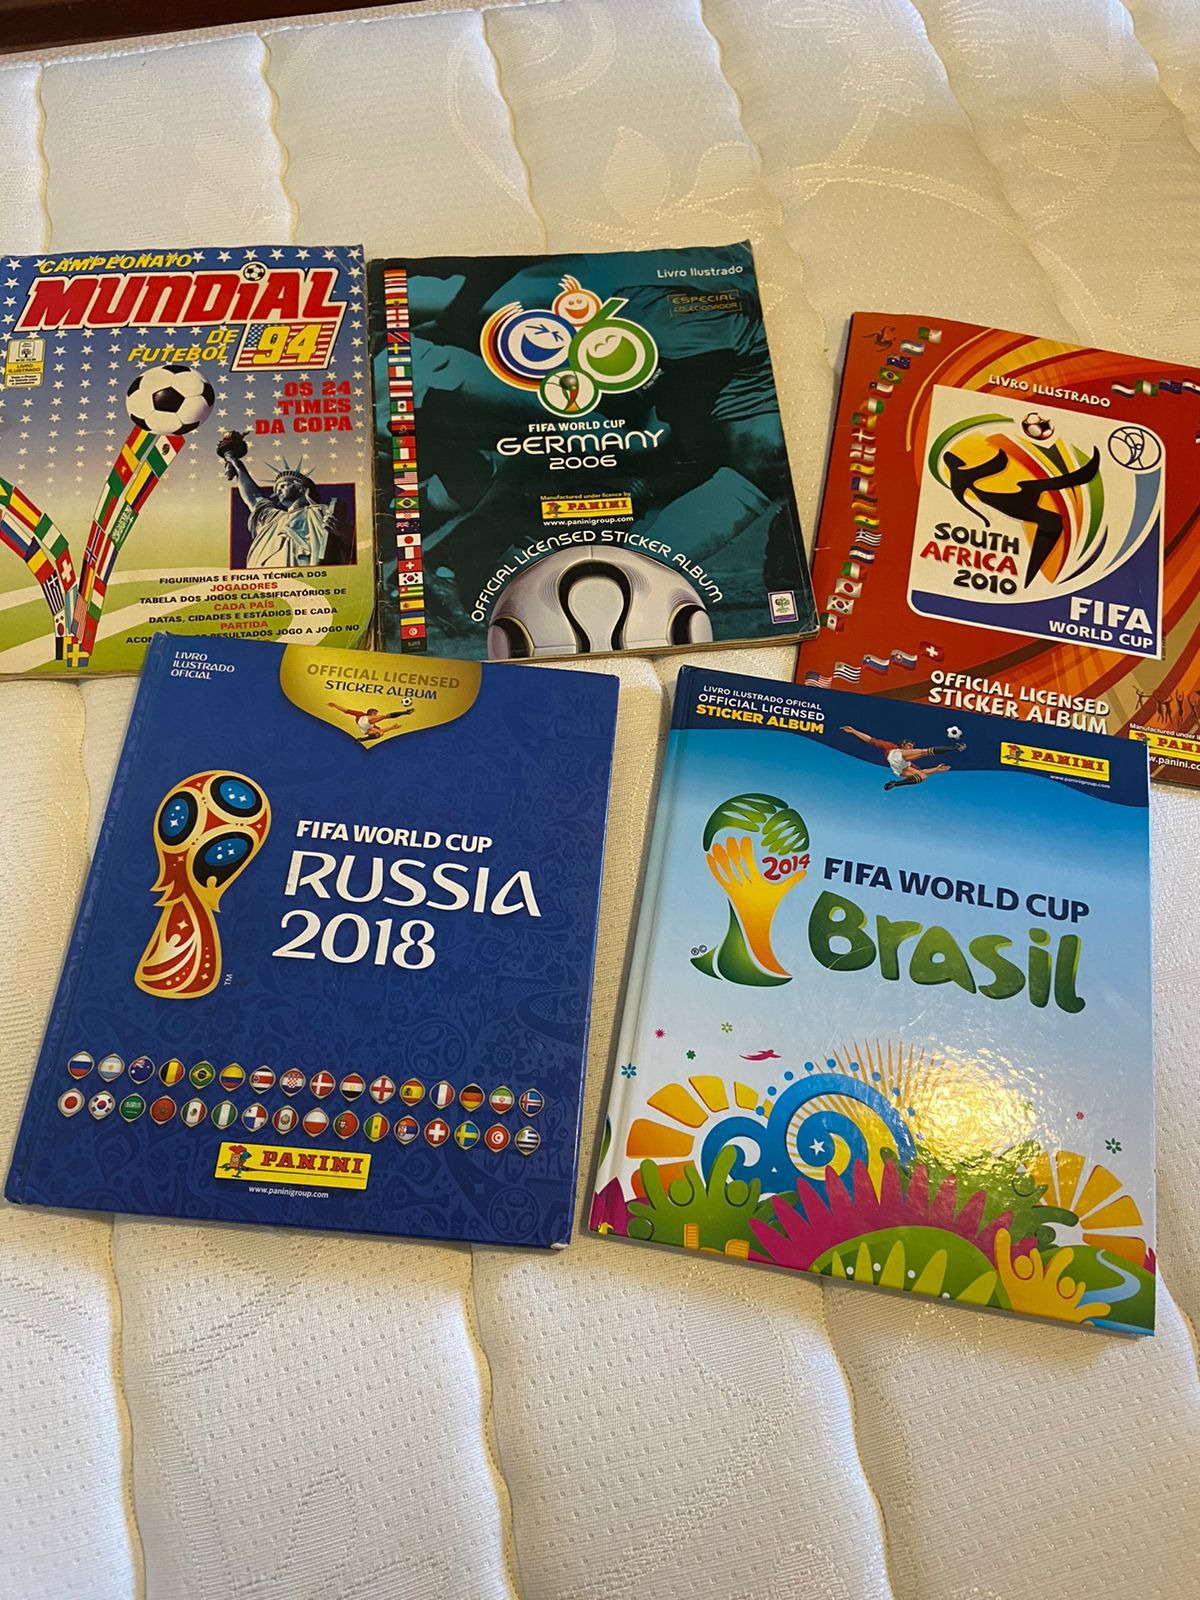 Álbum de figurinhas da Copa do Mundo 2018 será lançado domingo